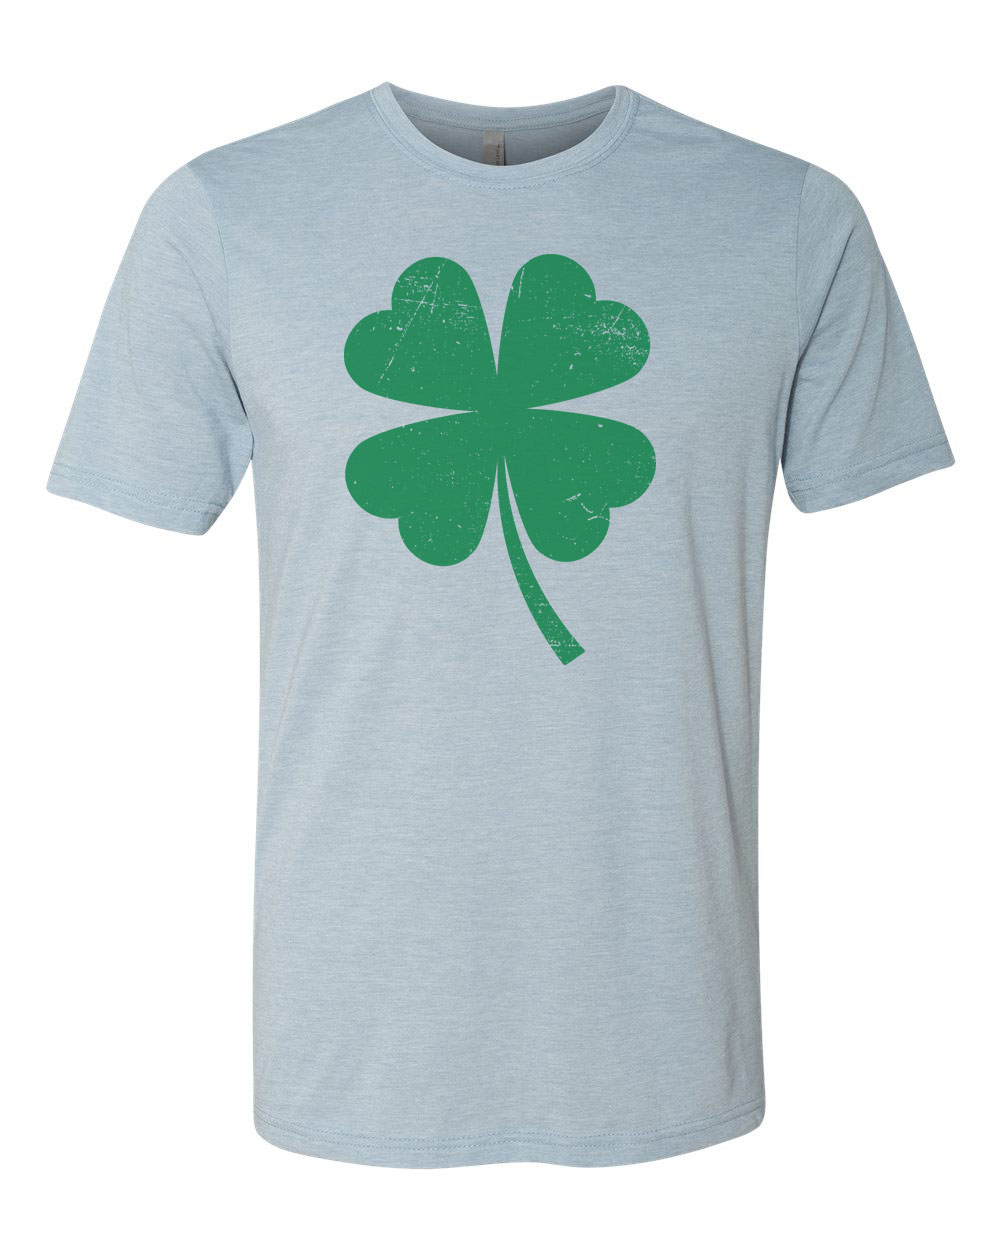 St. Patricks Day Shirt, Shamrock Shirt, Four Leaf Clover, Unisex Fit, Distressed Clover, Clover Shirt, 4 Leaf Clover, Shamrock, St Patricks, Stonewash Denim, LARGE - image 1 of 1